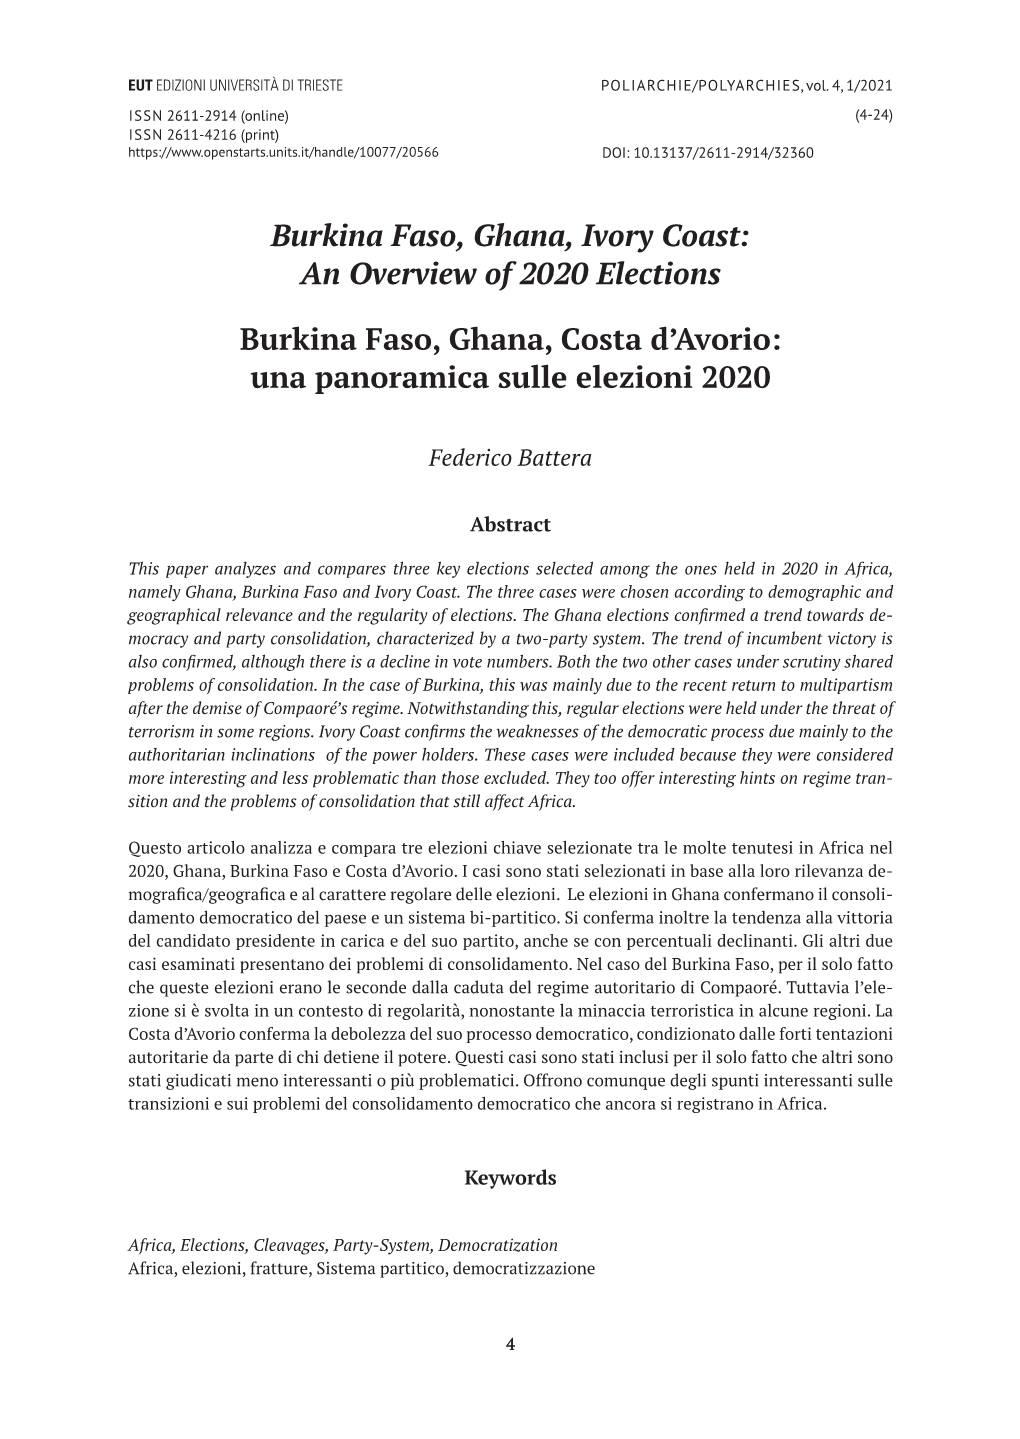 Burkina Faso, Ghana, Ivory Coast: an Overview of 2020 Elections